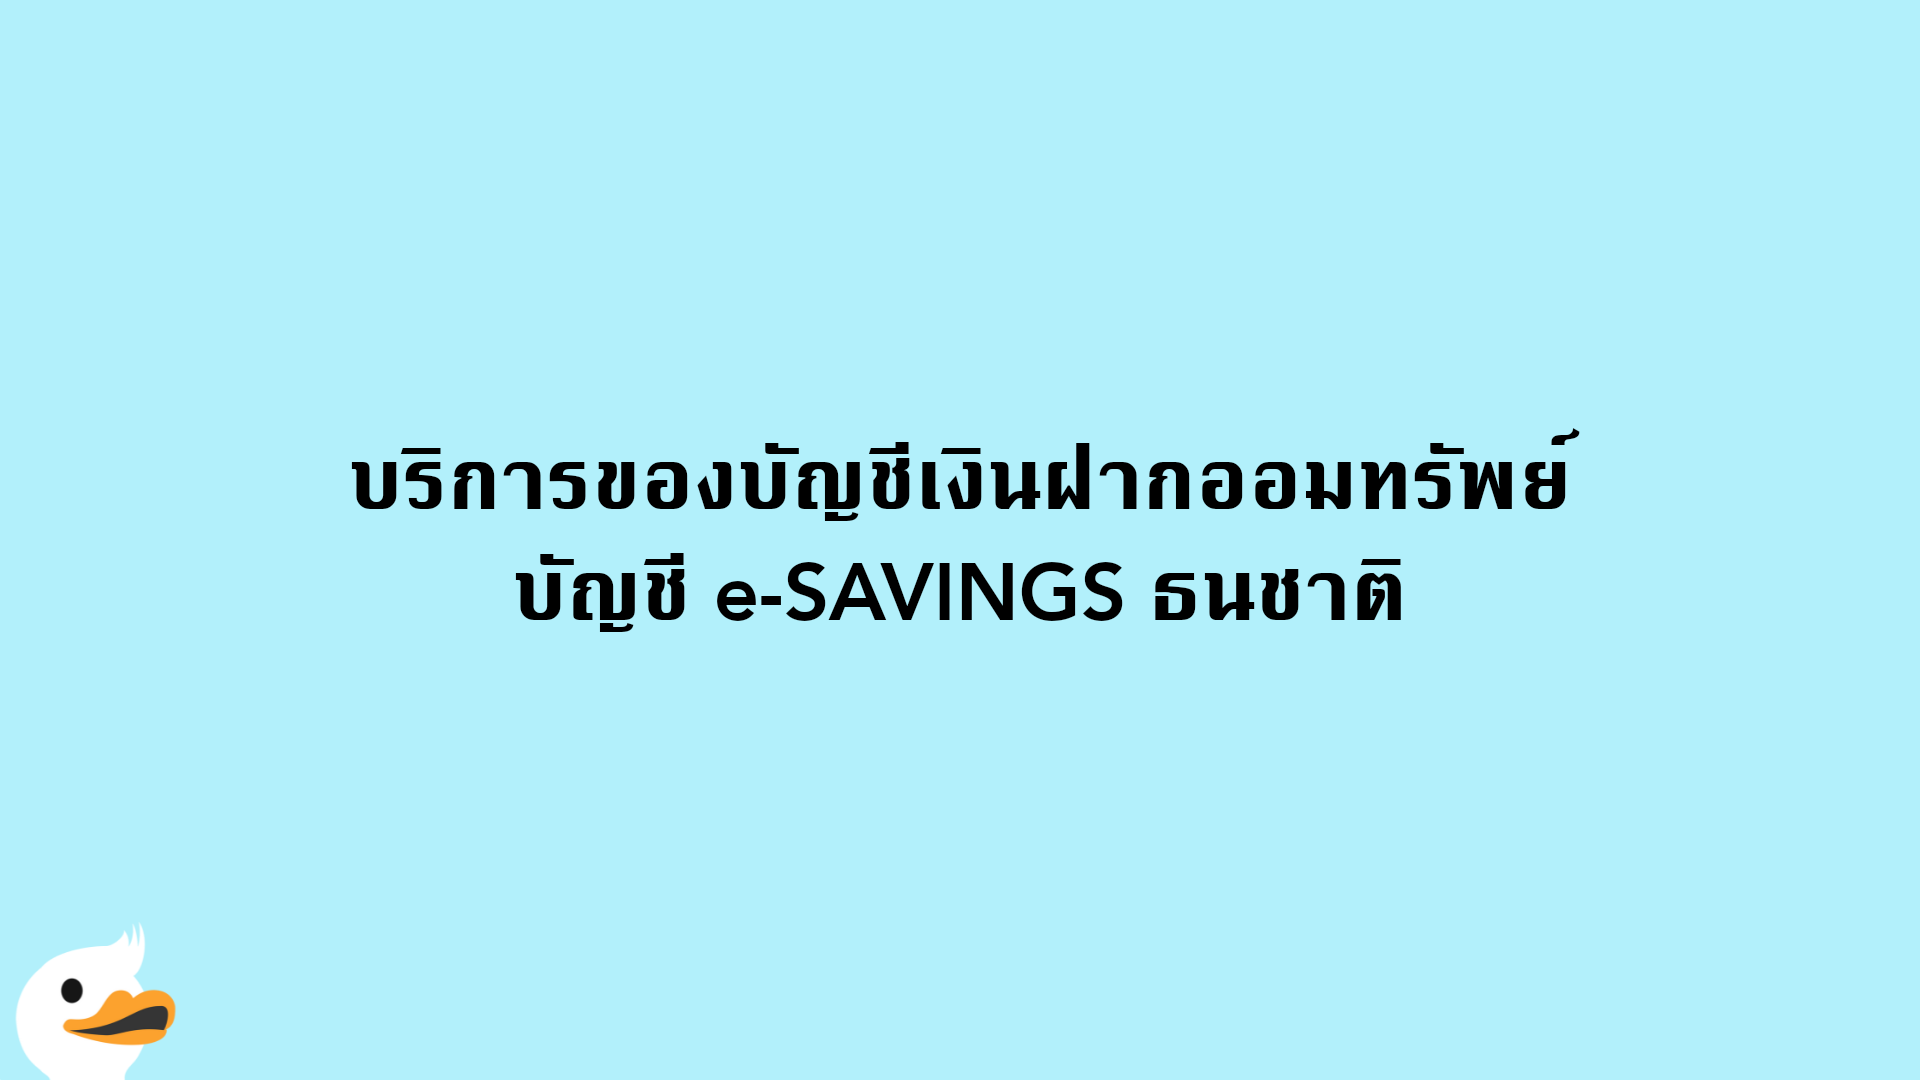 บริการของบัญชีเงินฝากออมทรัพย์ บัญชี e-SAVINGS ธนชาติ